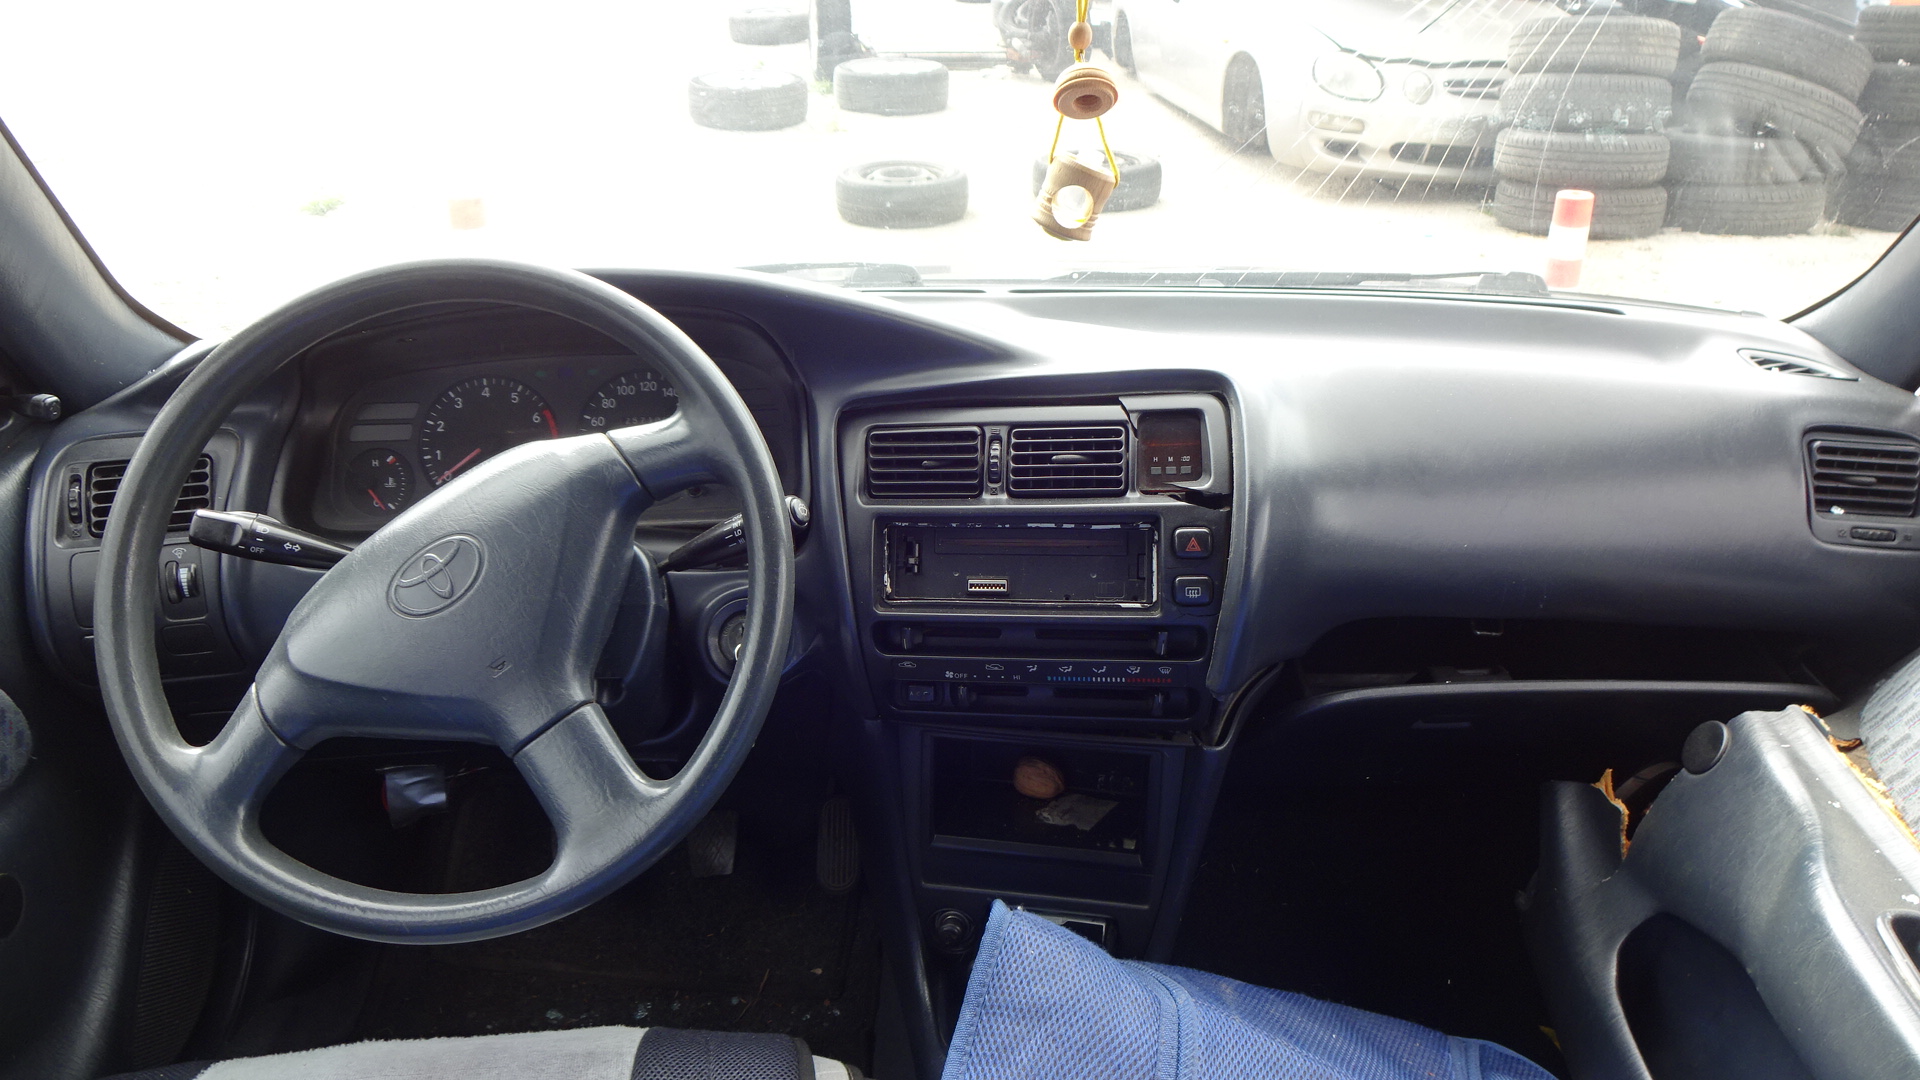 Μούρη Κομπλέ Toyota  Corolla ’97 Προσφορά.